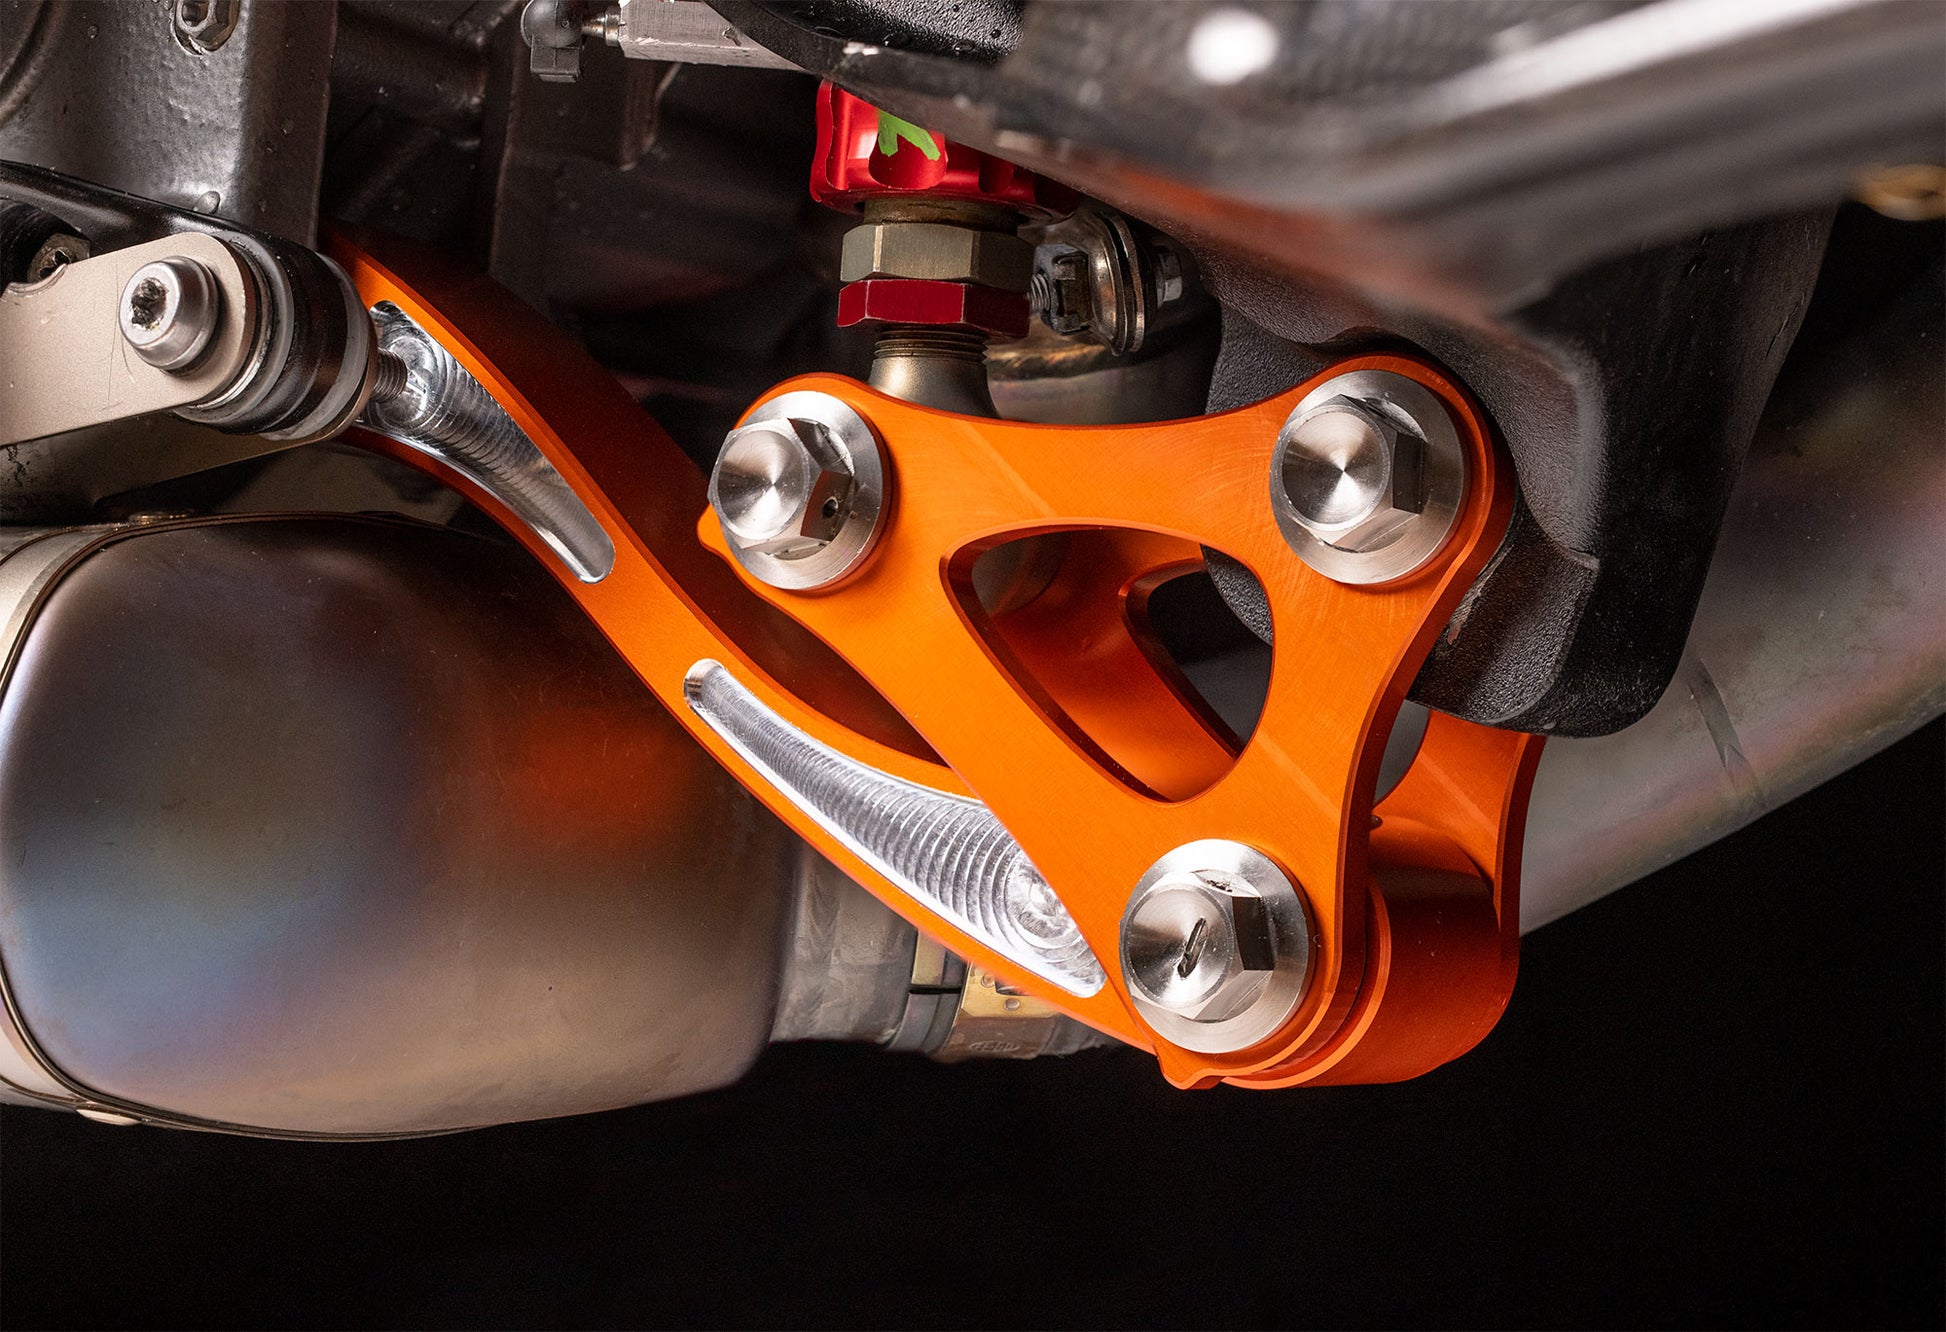 Superlink Suspension Linkage Kit for Race Shocks on KTM 1290 Superduke –  Superduked